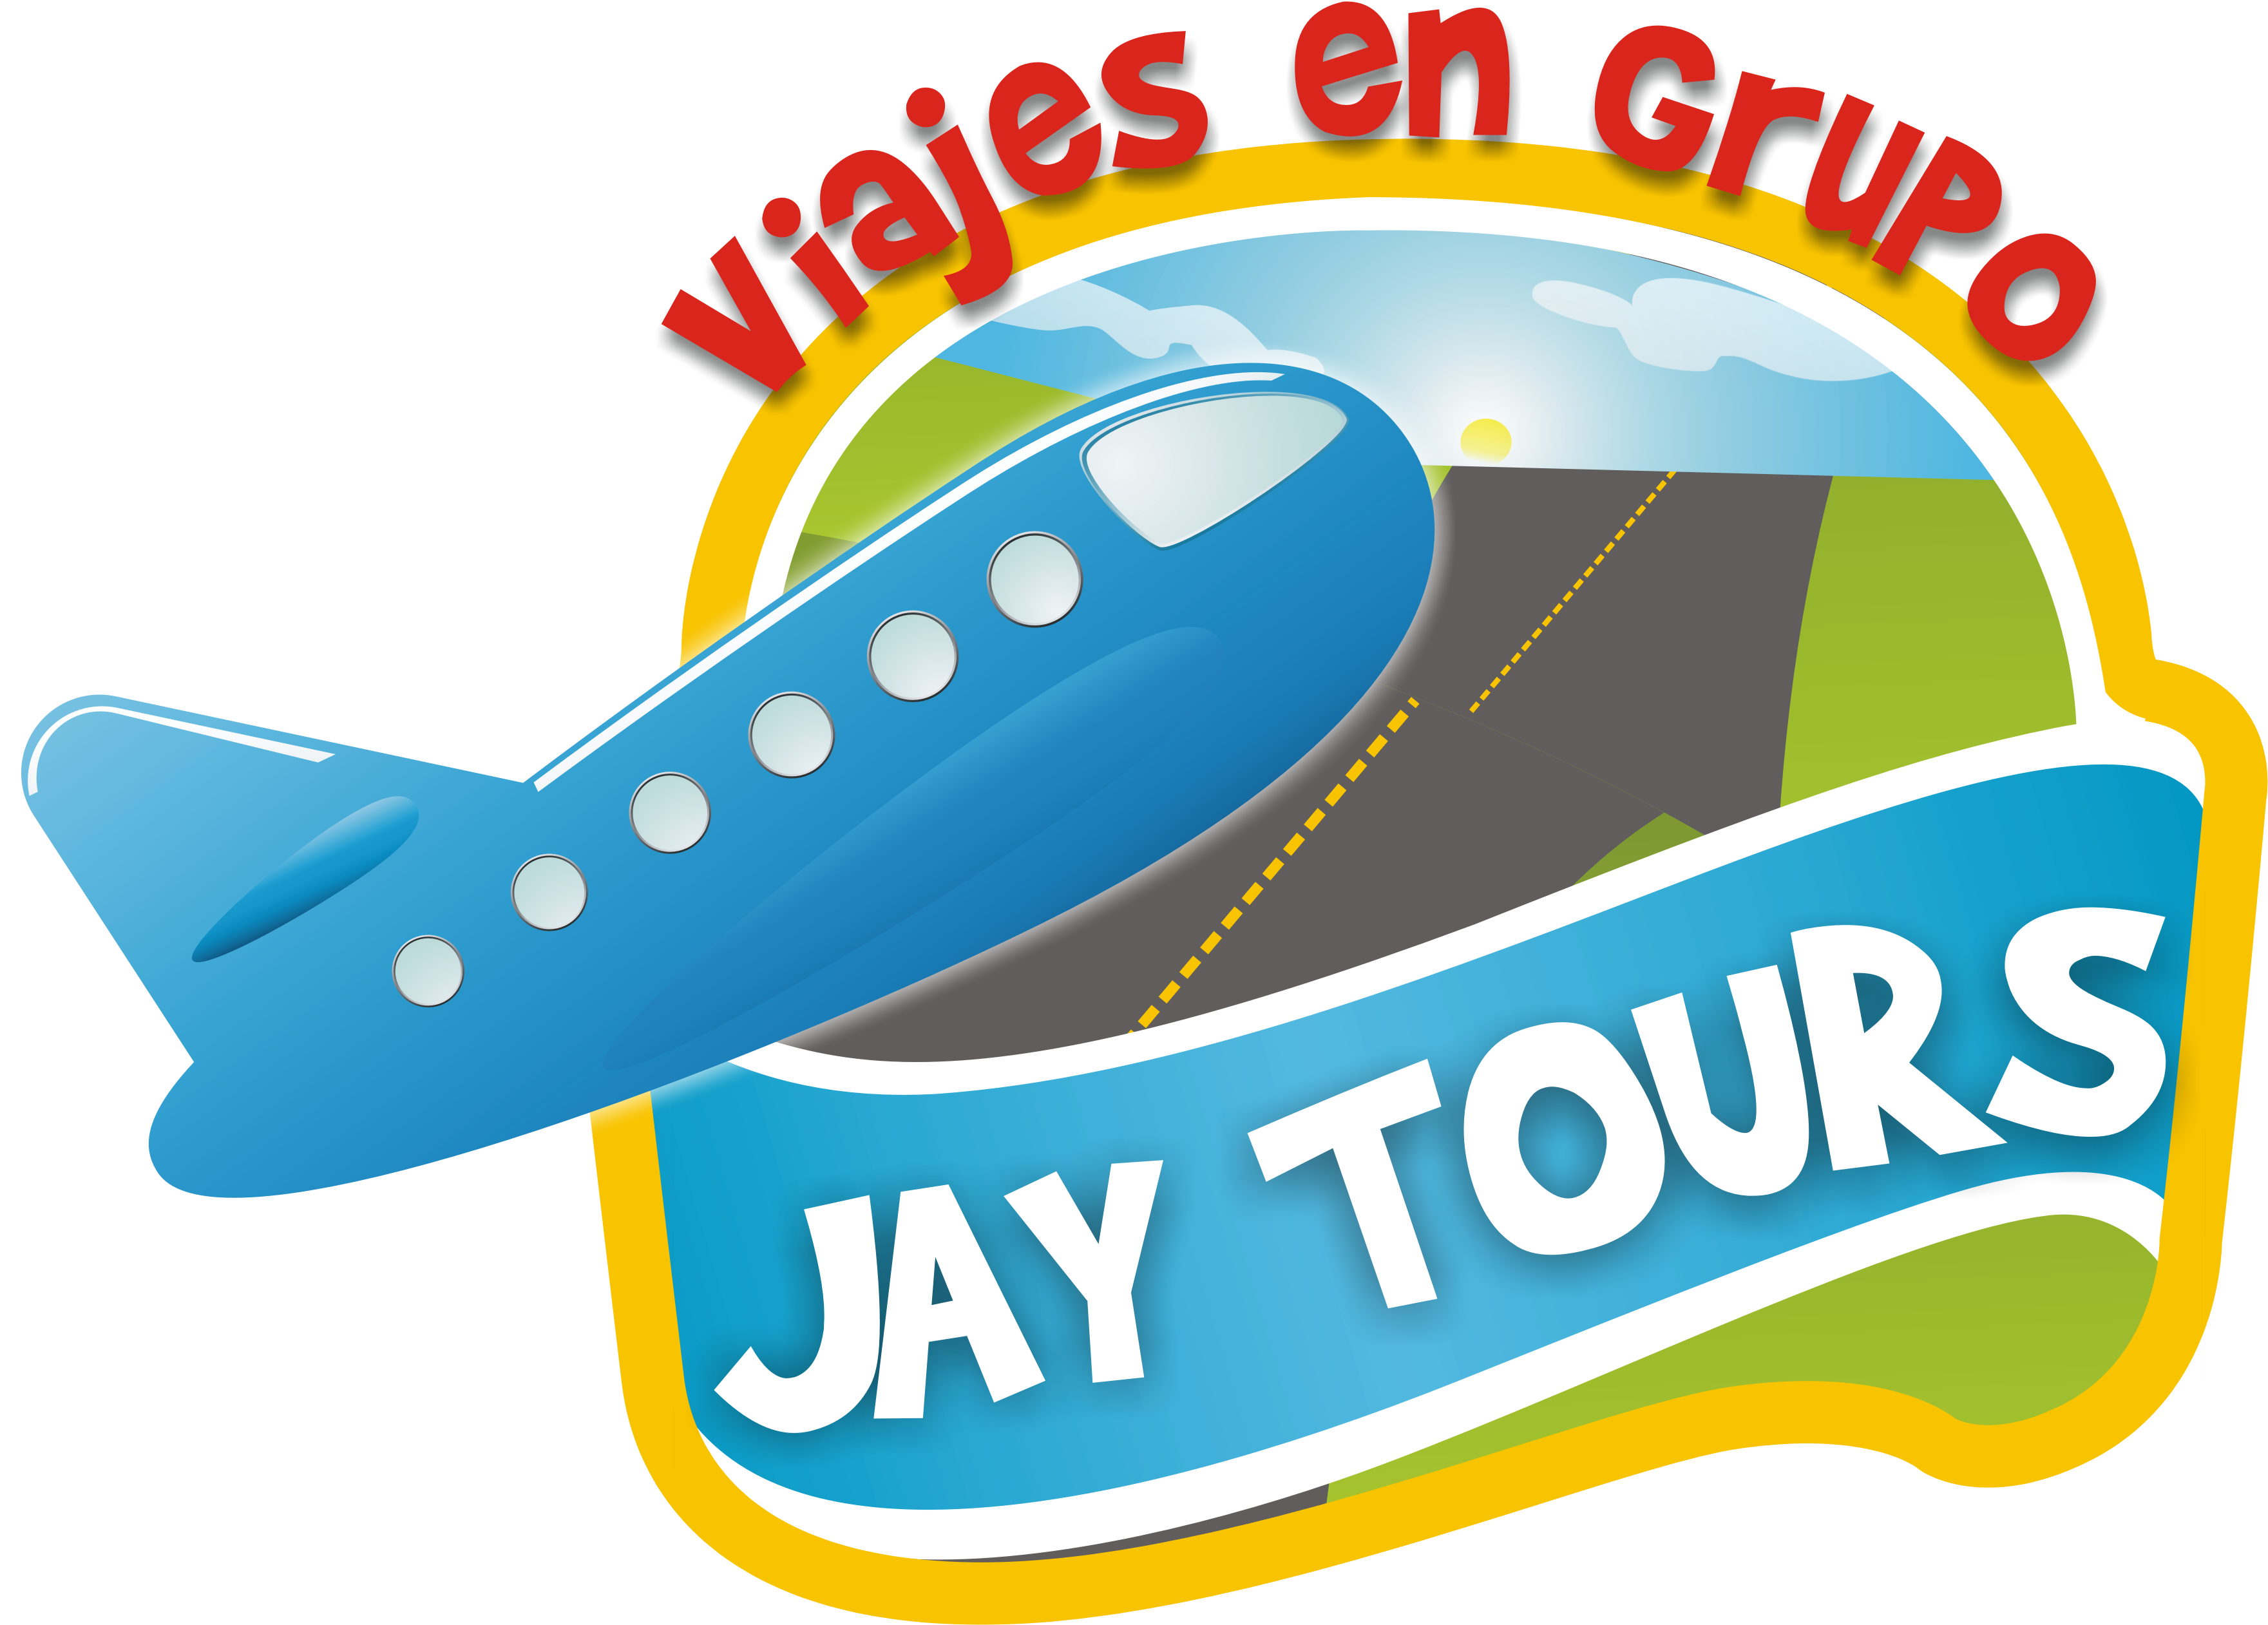 Agencia de Viajes Jay Tours